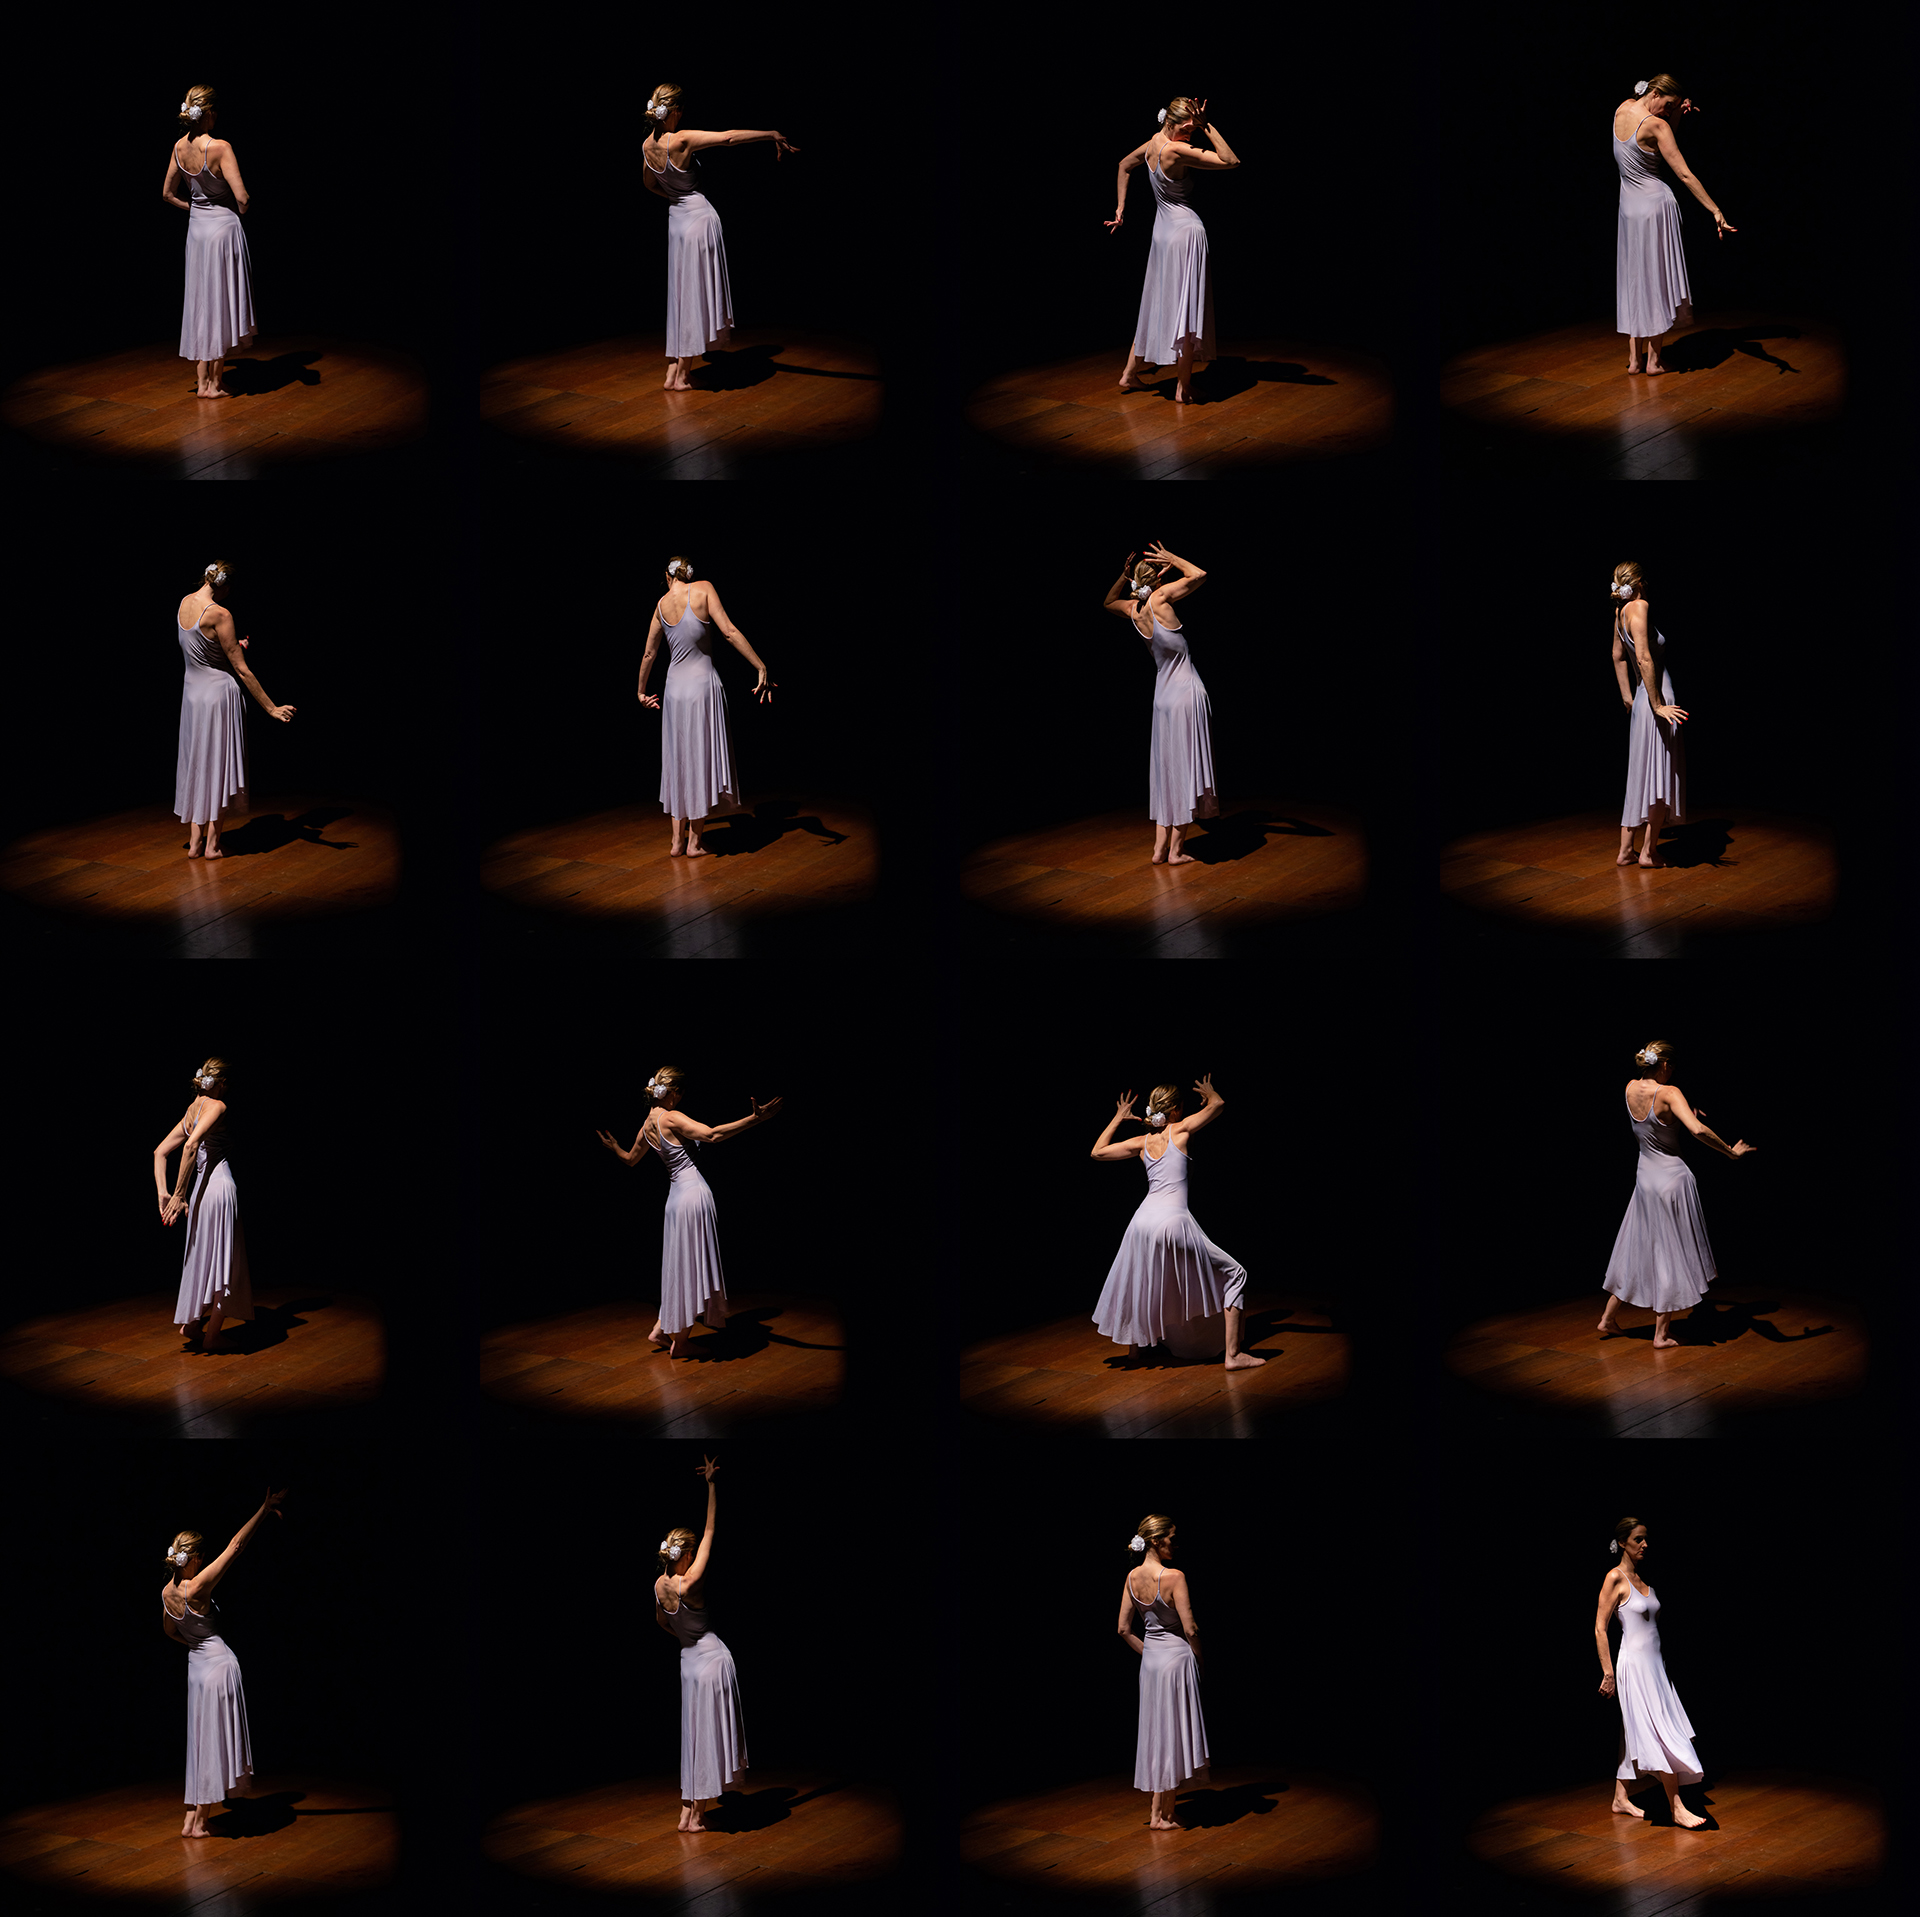 Movimentos inspirados pela dança flamenca, por Karen Vogel. 